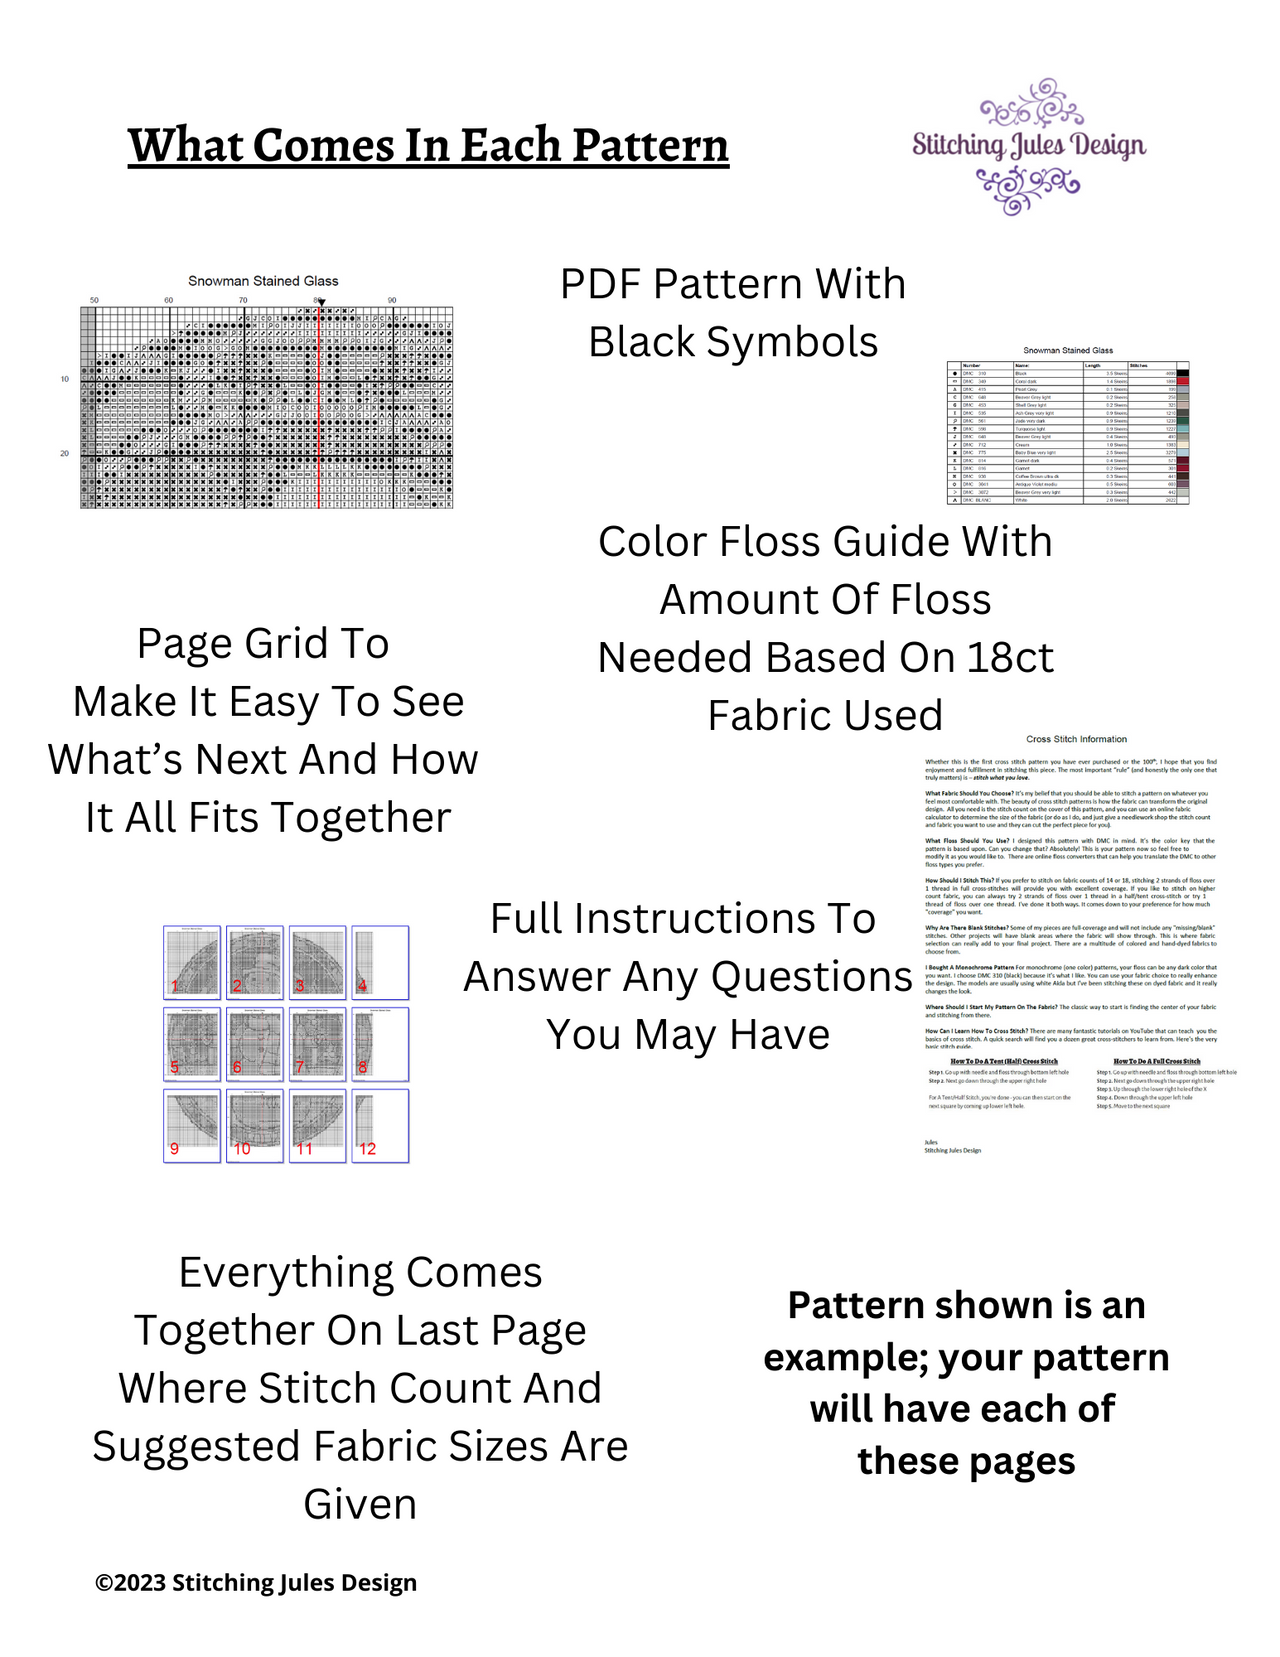 Basilica Cross Stitch Pattern | Architecture Monochrome Blackwork Cross Stitch Pattern | Instant Download PDF